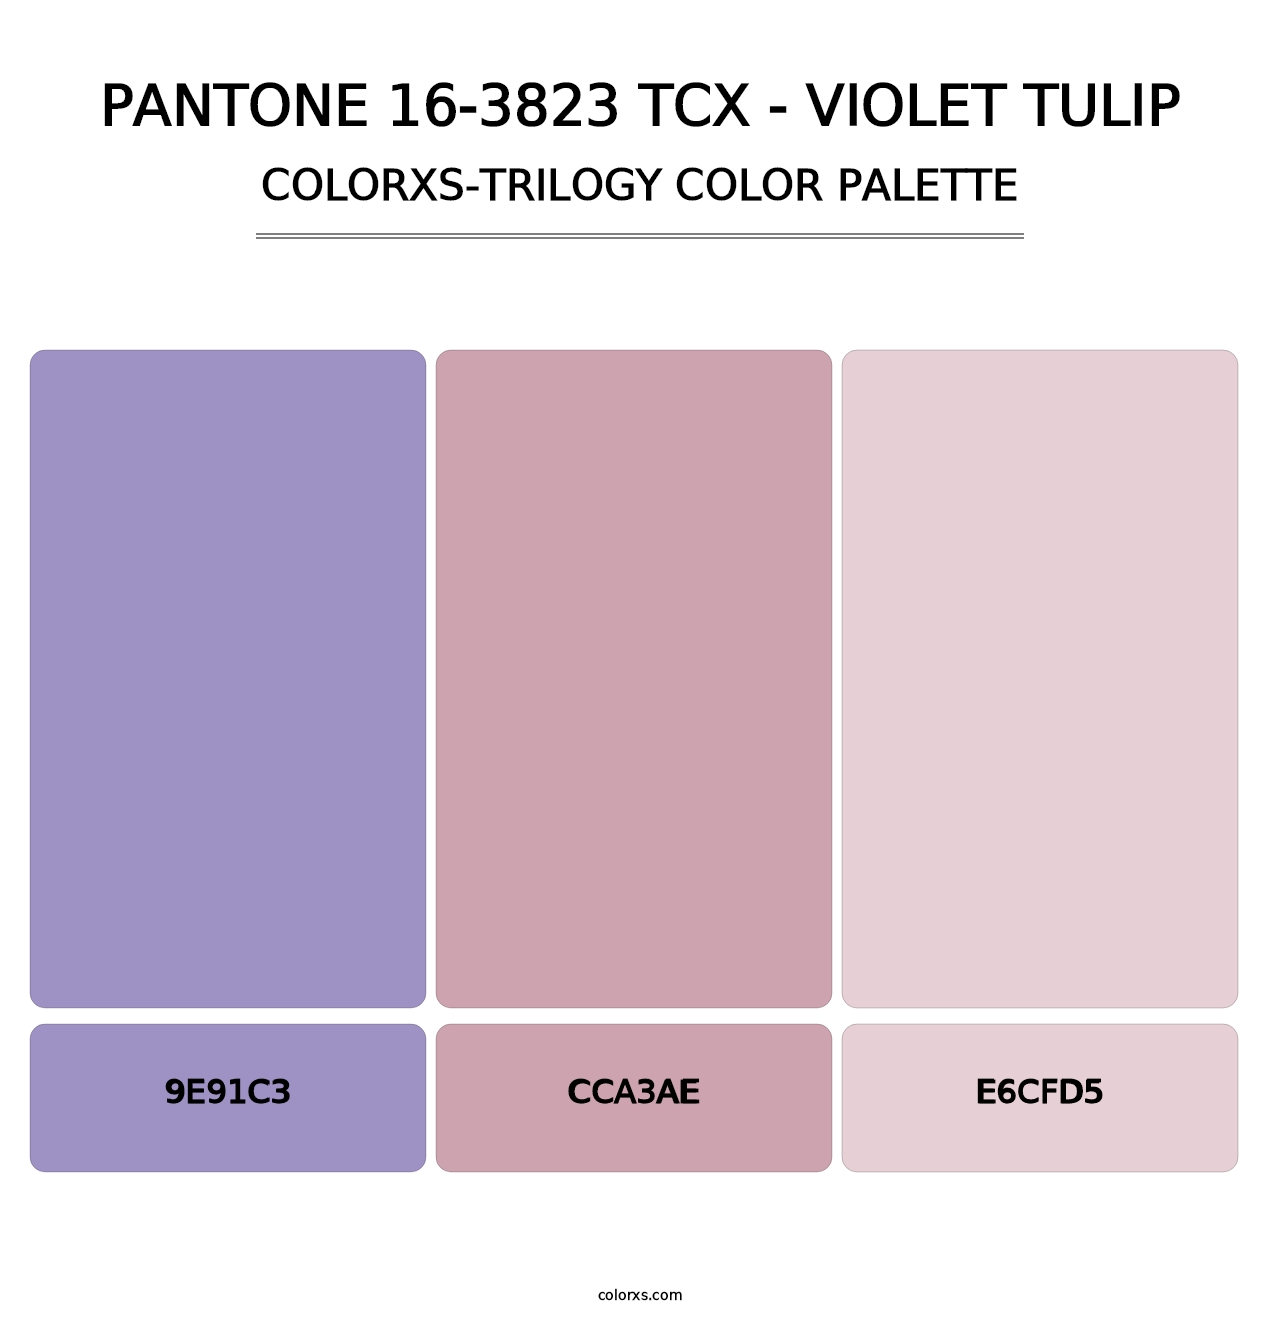 PANTONE 16-3823 TCX - Violet Tulip - Colorxs Trilogy Palette